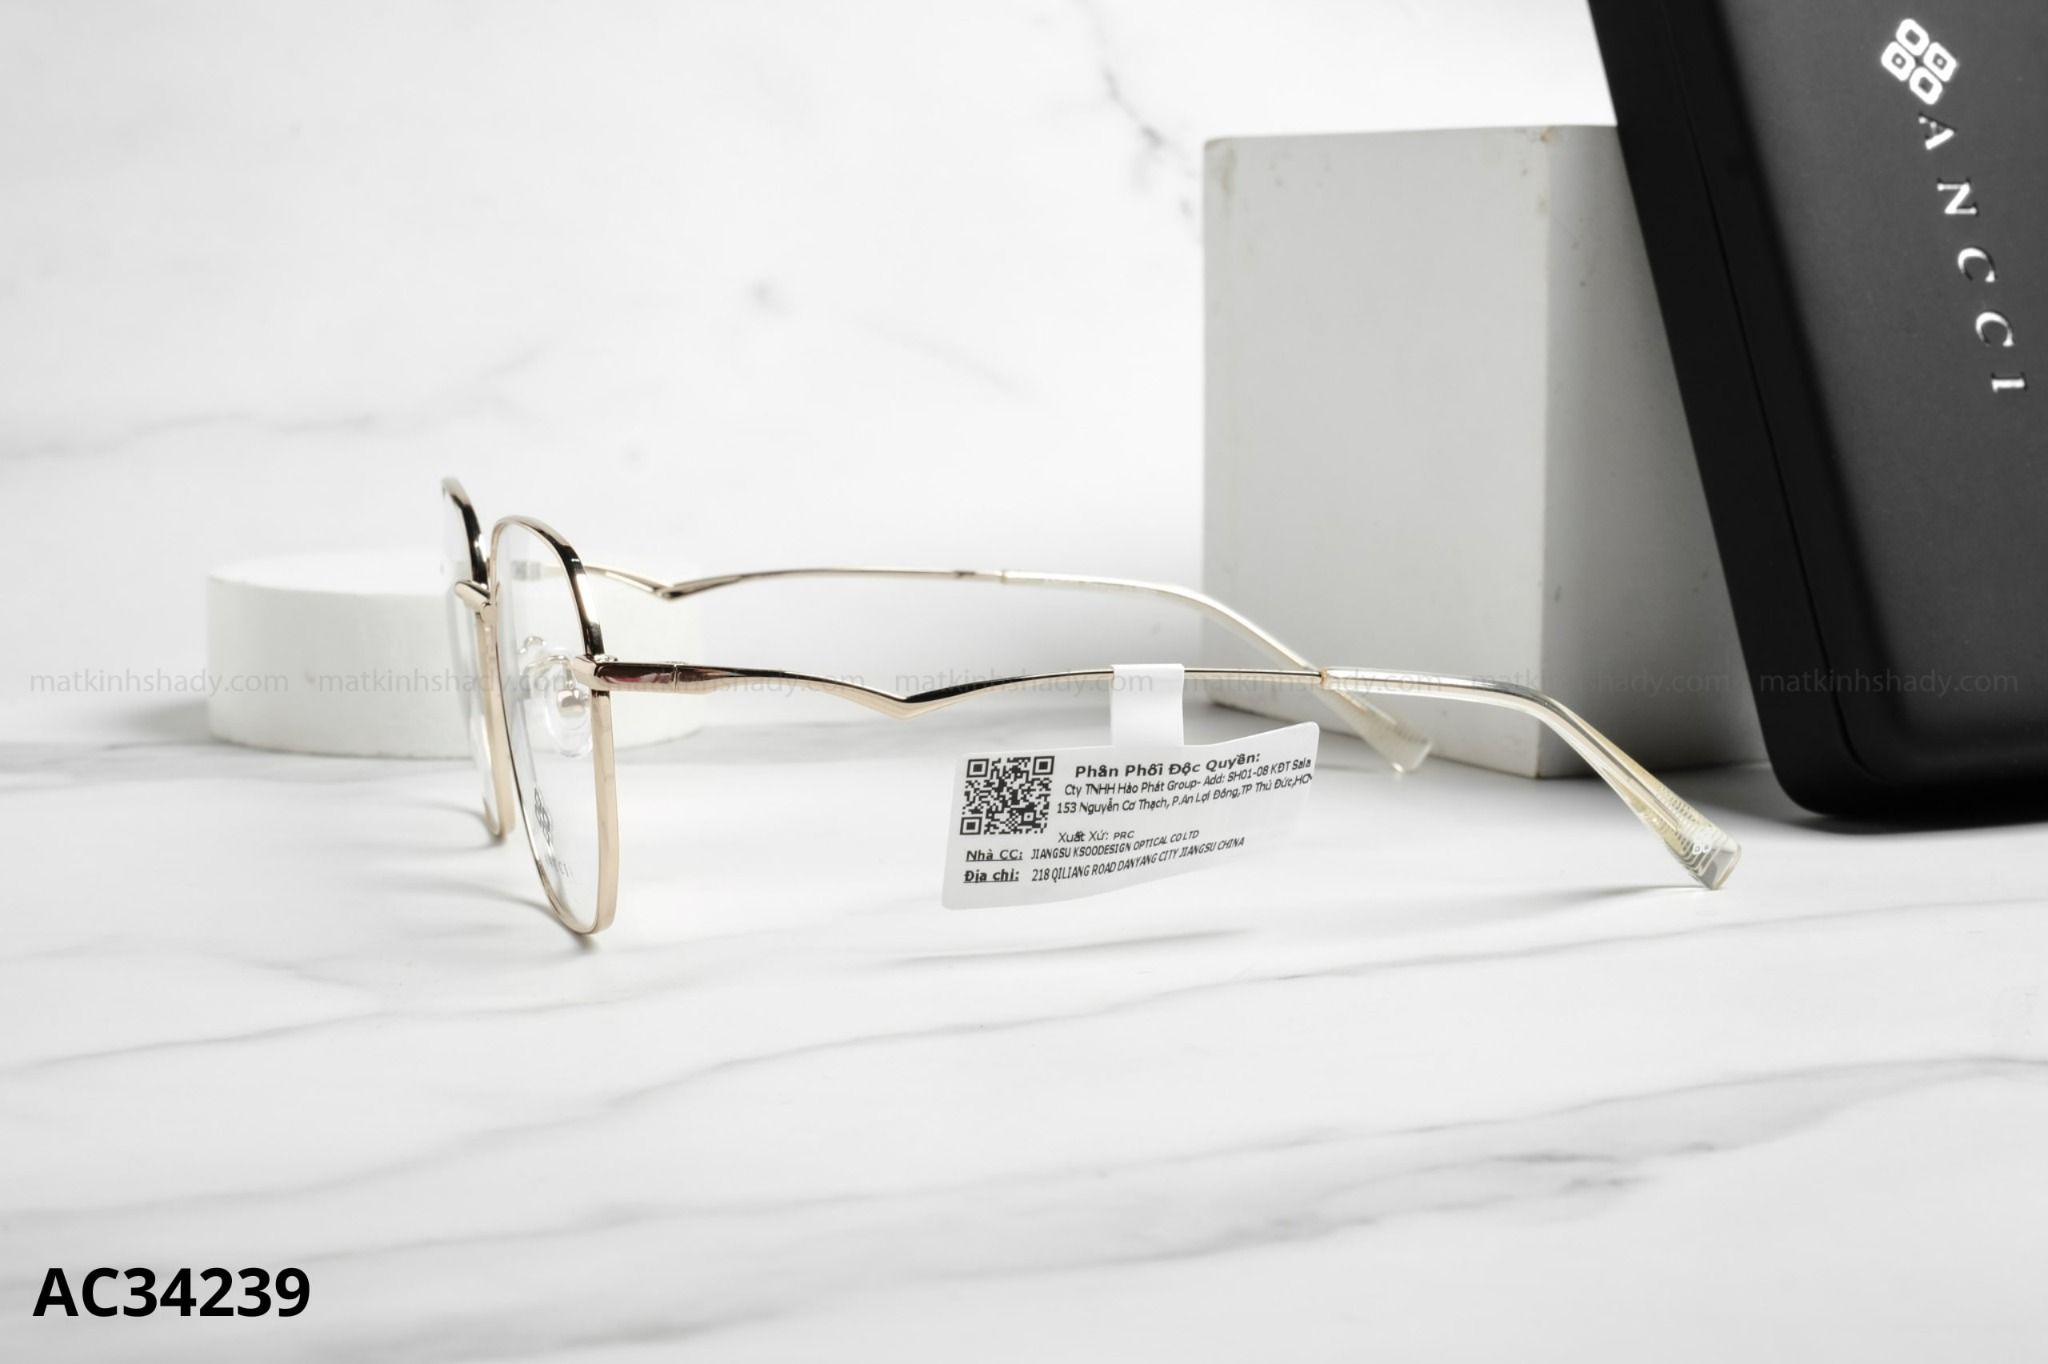  ANCCI Eyewear - Glasses - AC34239 